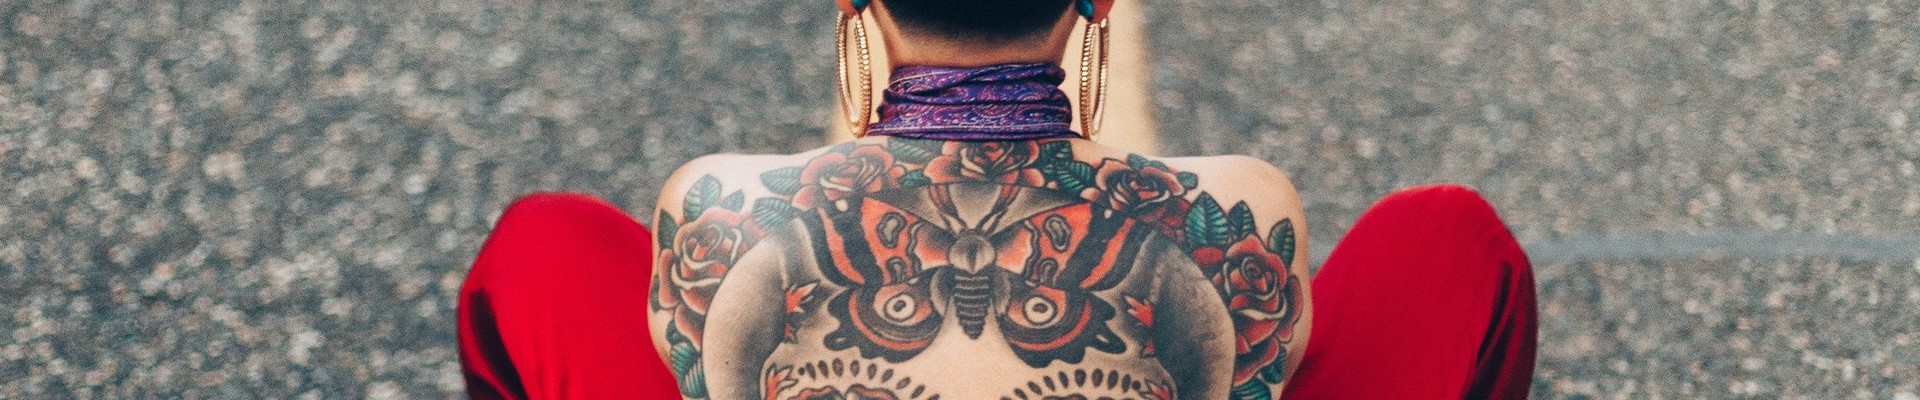 As pessoas adoram tatuar marcas em seus corpos. Por que elas fazem isso é outra questão